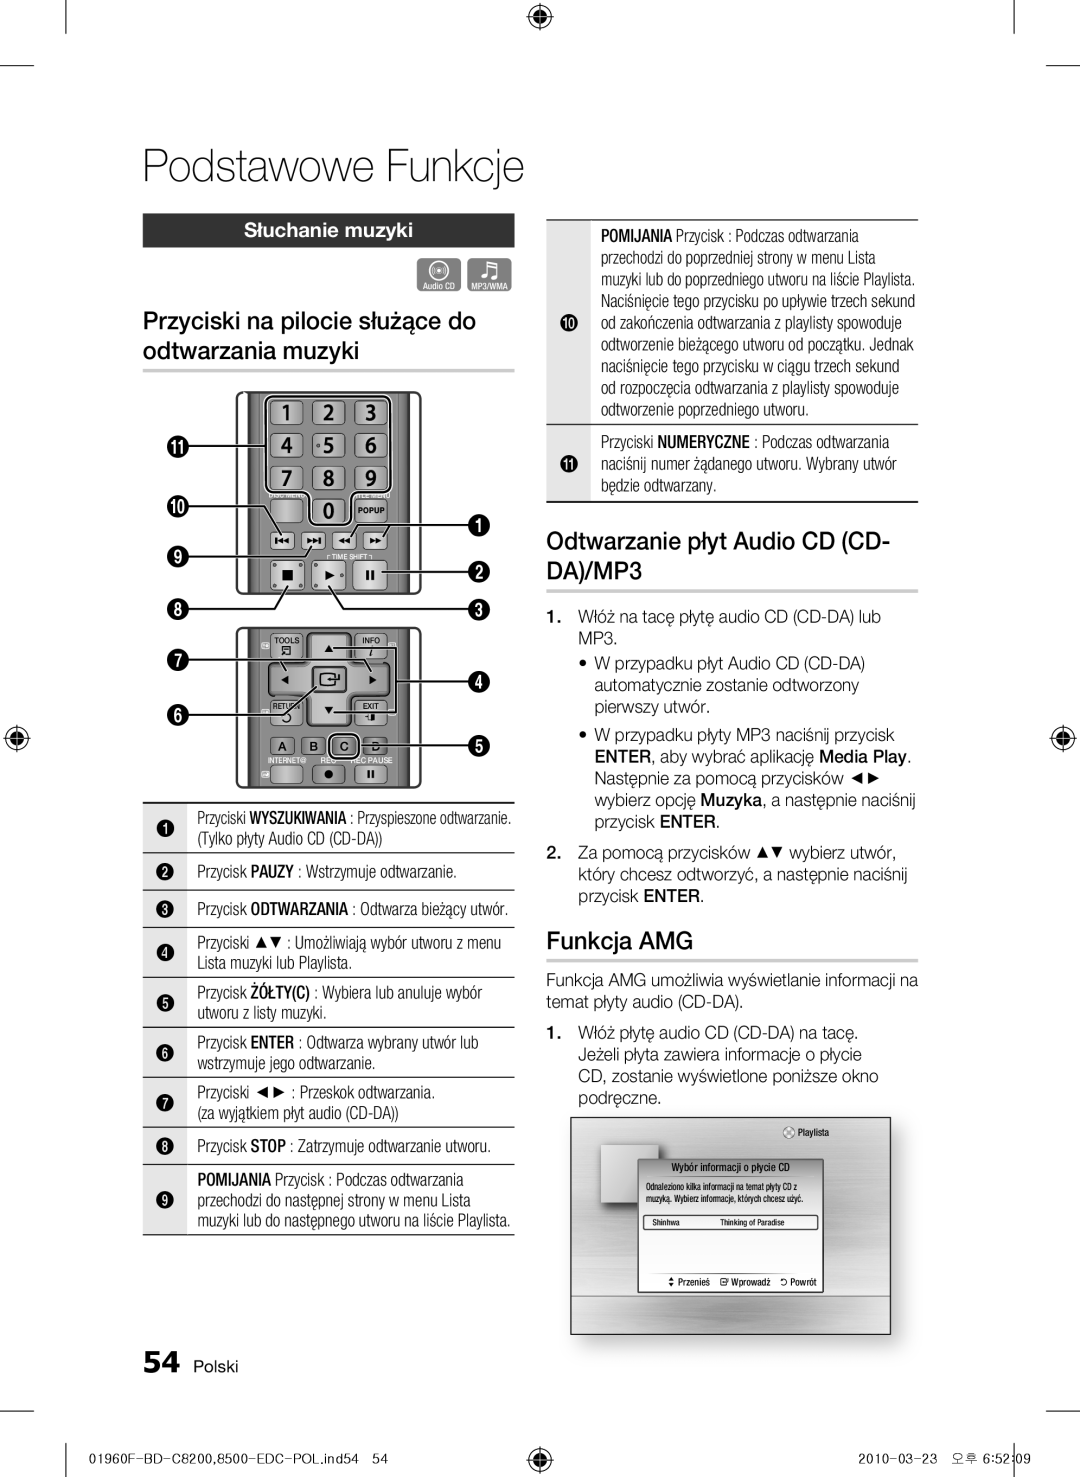 Samsung BD-C8500/XEF Przyciski na pilocie służące do odtwarzania muzyki, Odtwarzanie płyt Audio CD CD- DA/MP3, Funkcja AMG 